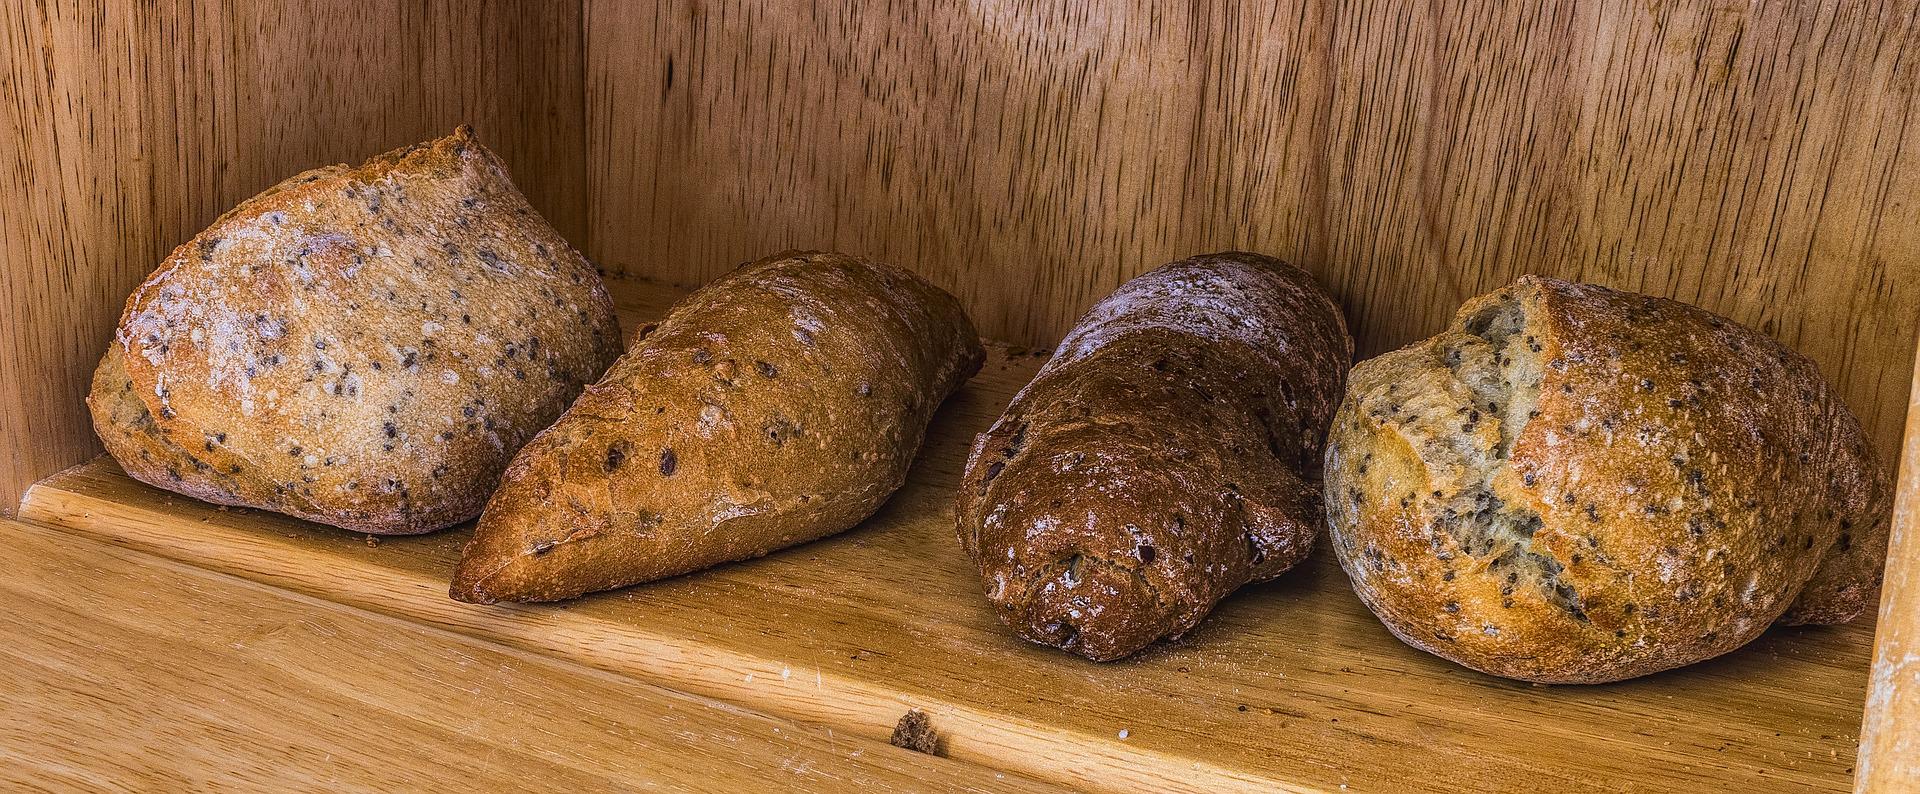 האם לחם מקמח כוסמין בריא יותר מלחמניית כוסמין?